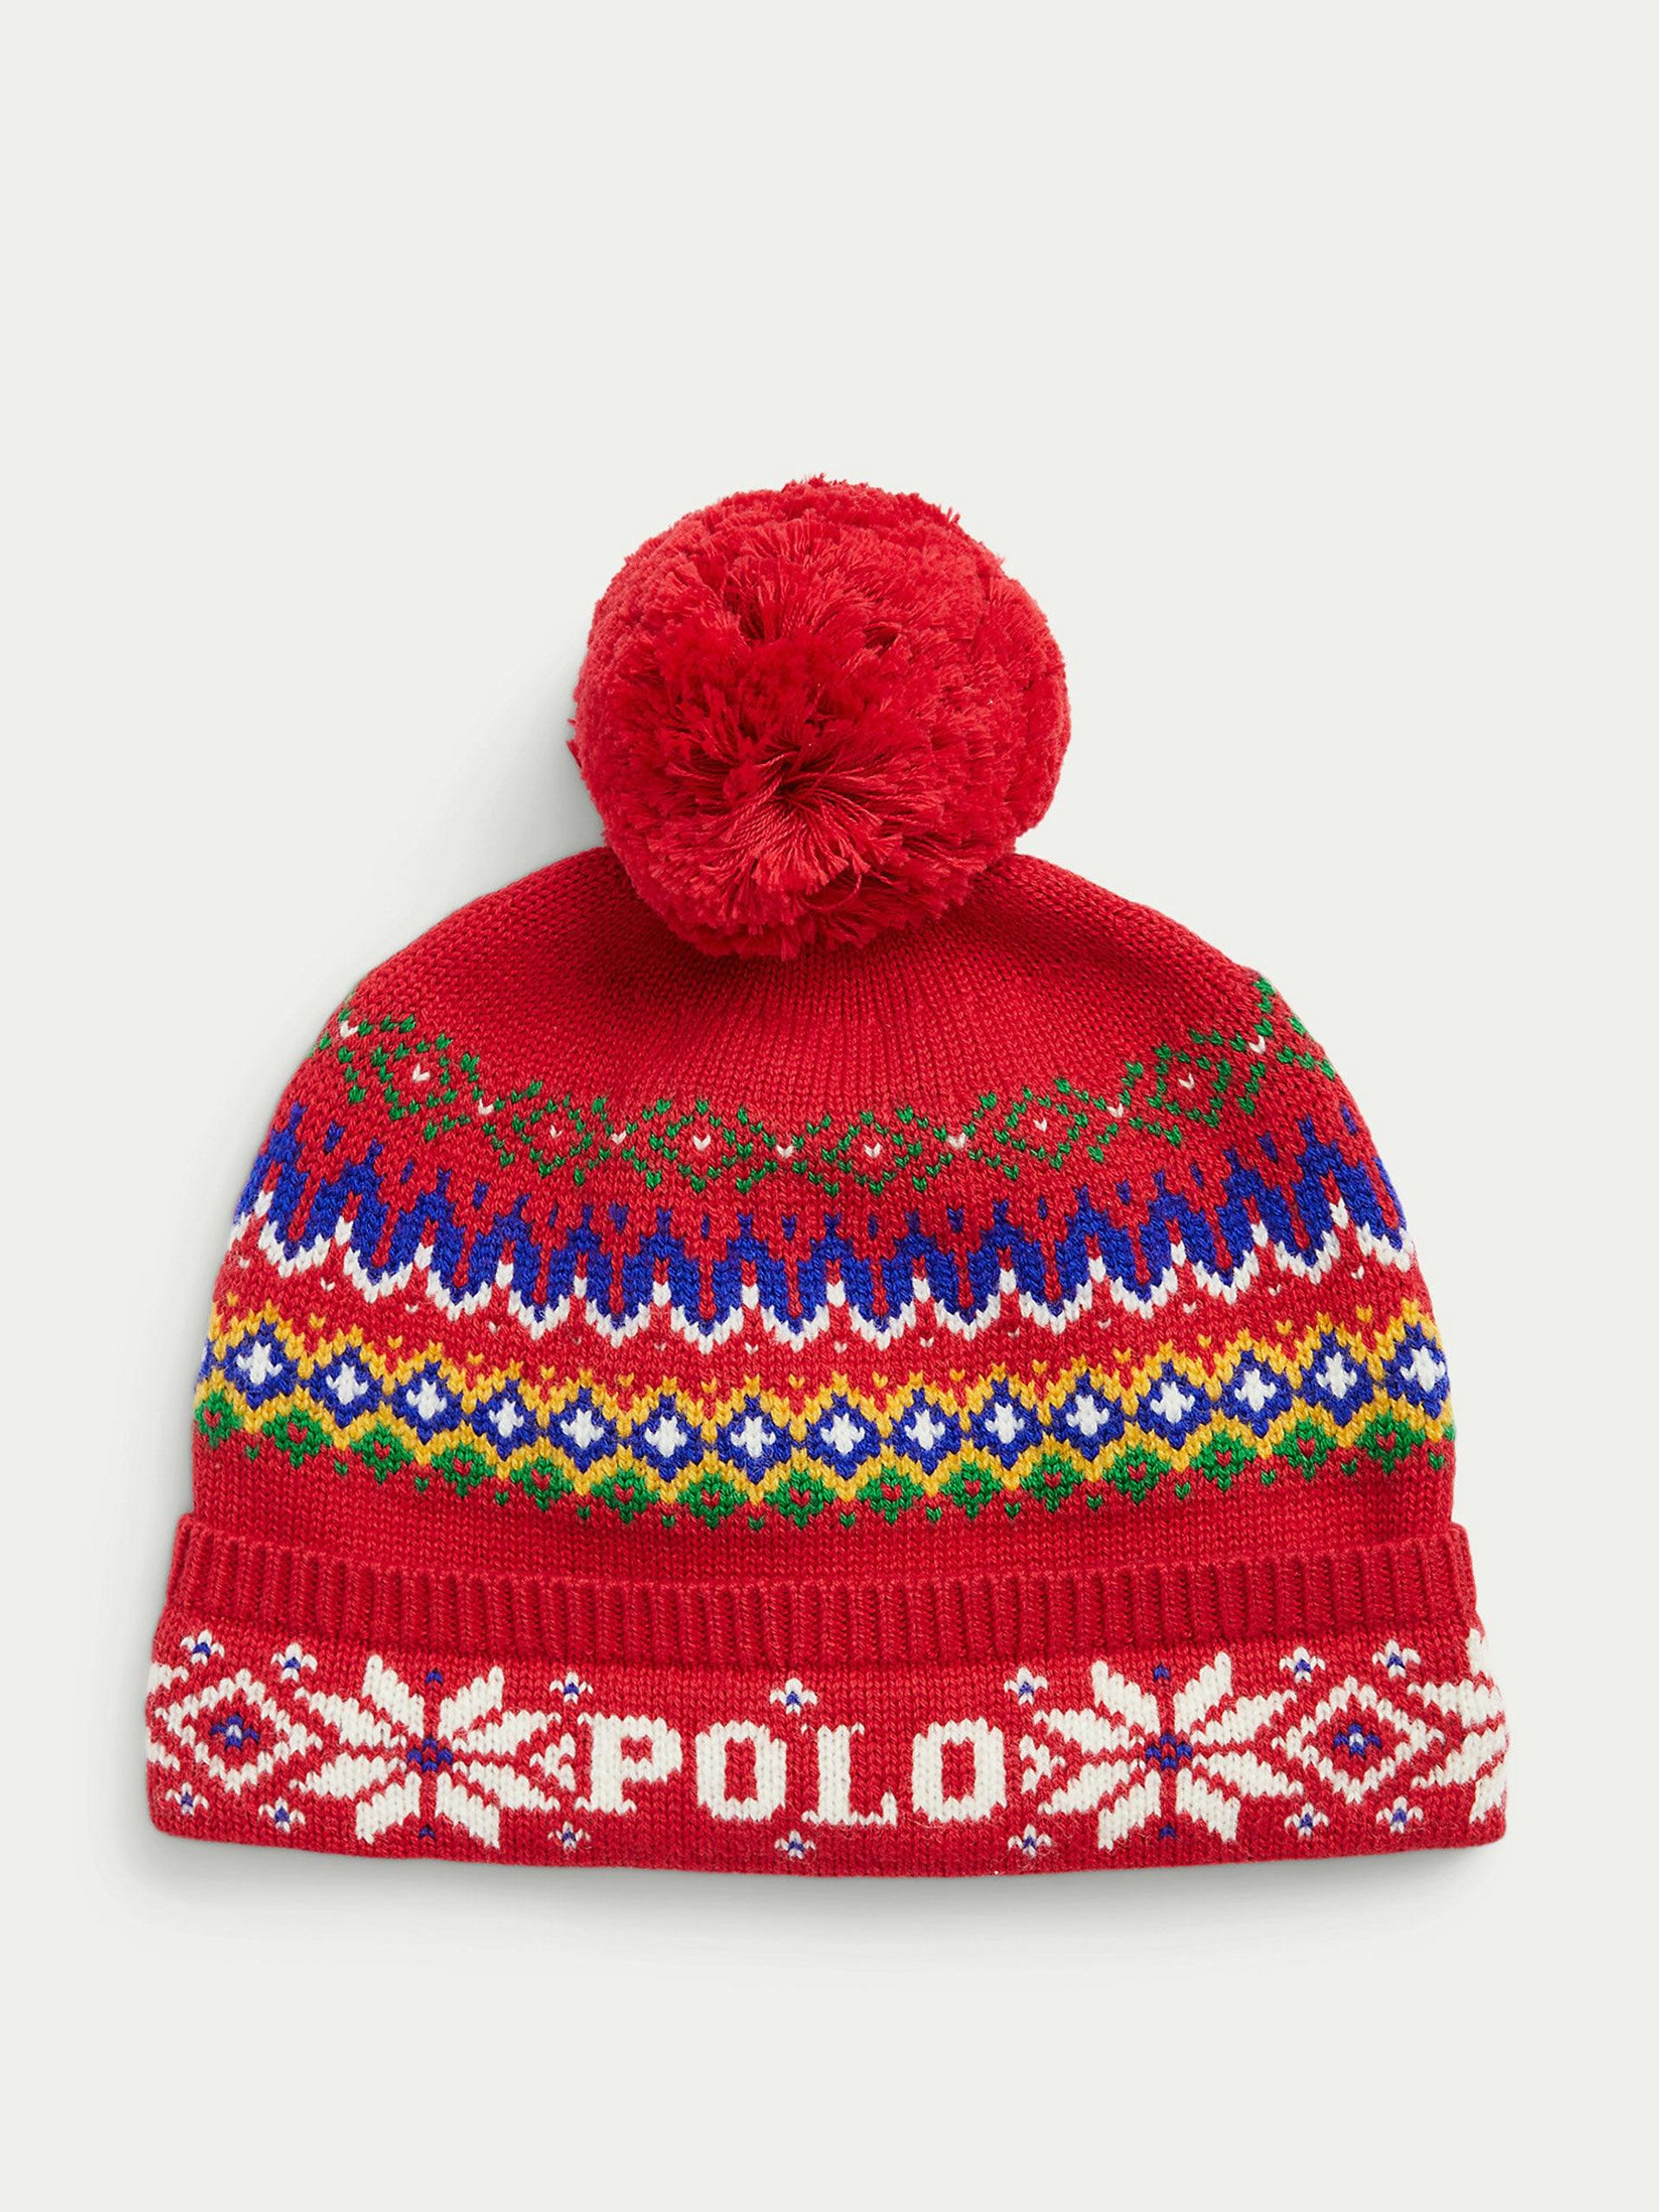 Cotton-wool pom pom hat